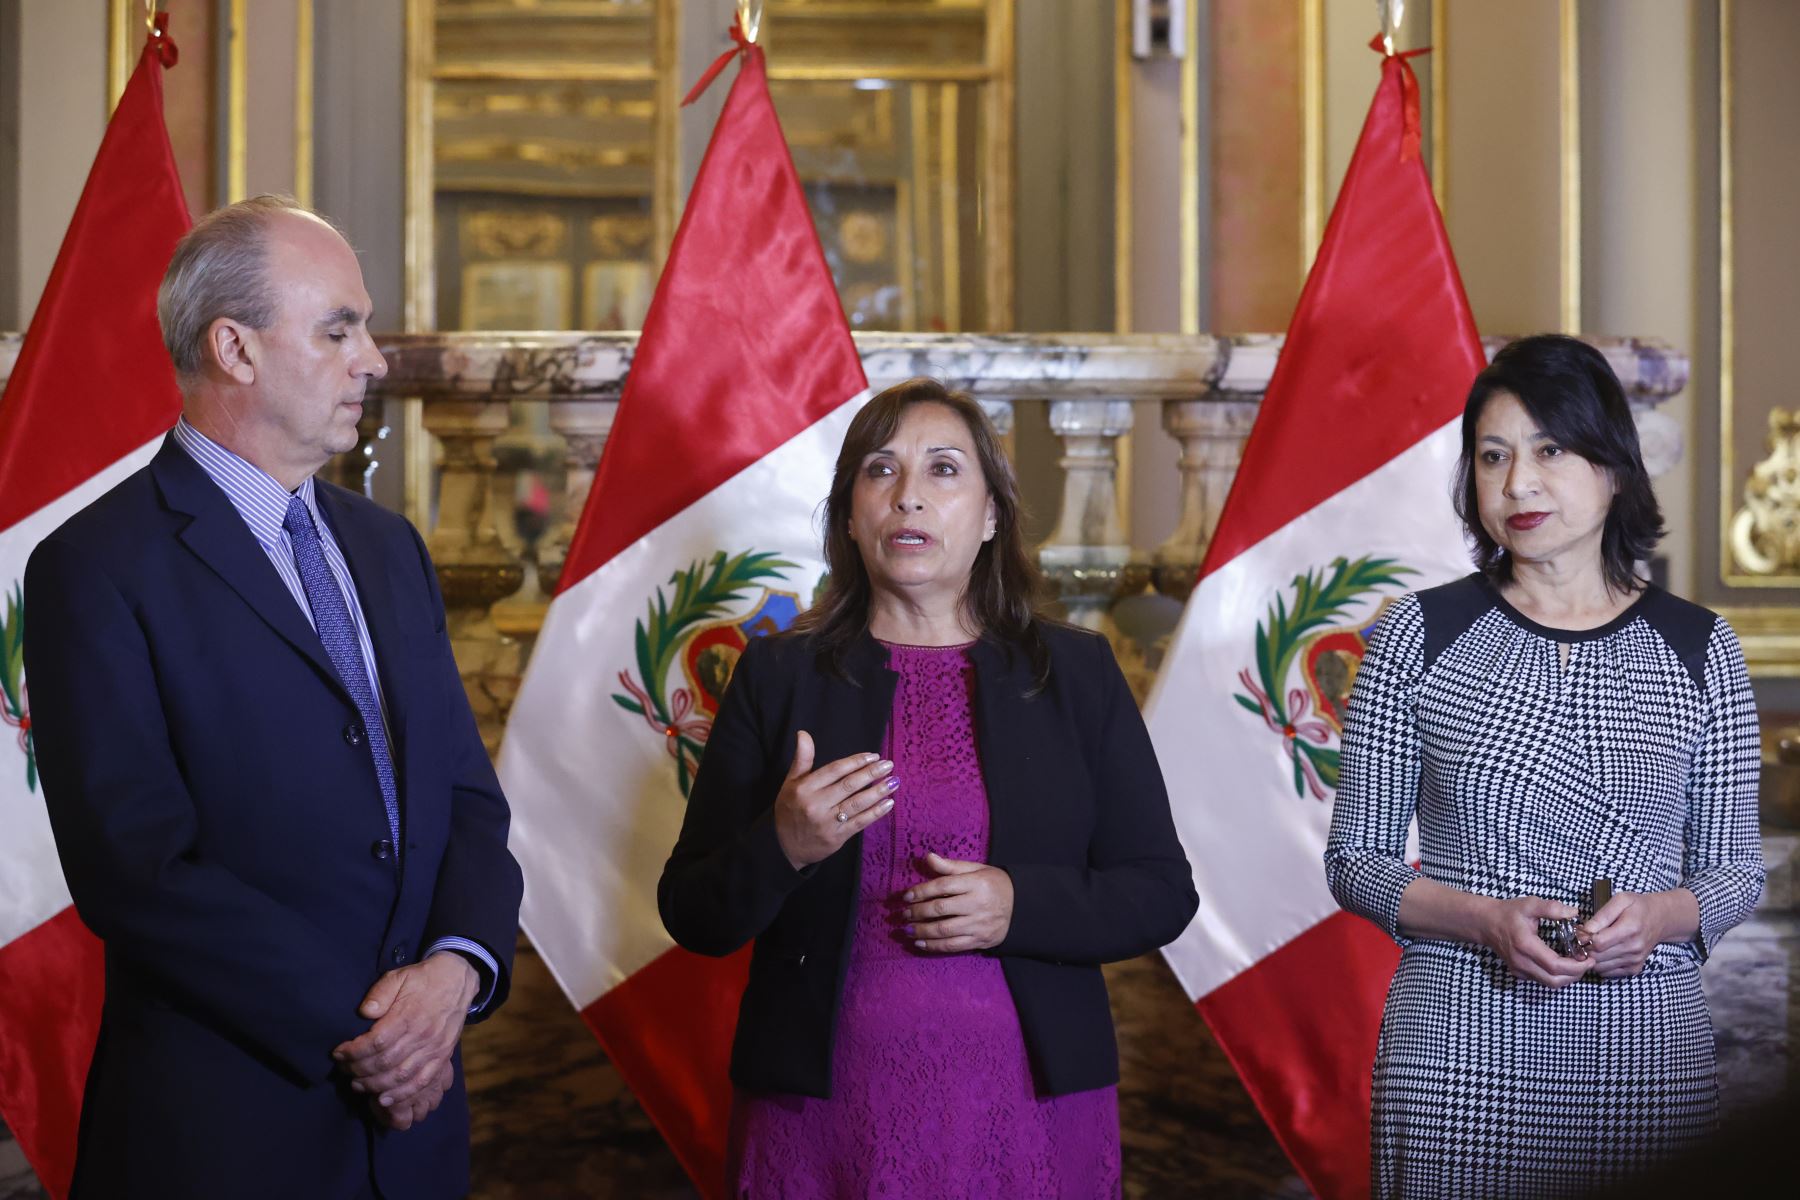 Foto: Presidencia del Perú